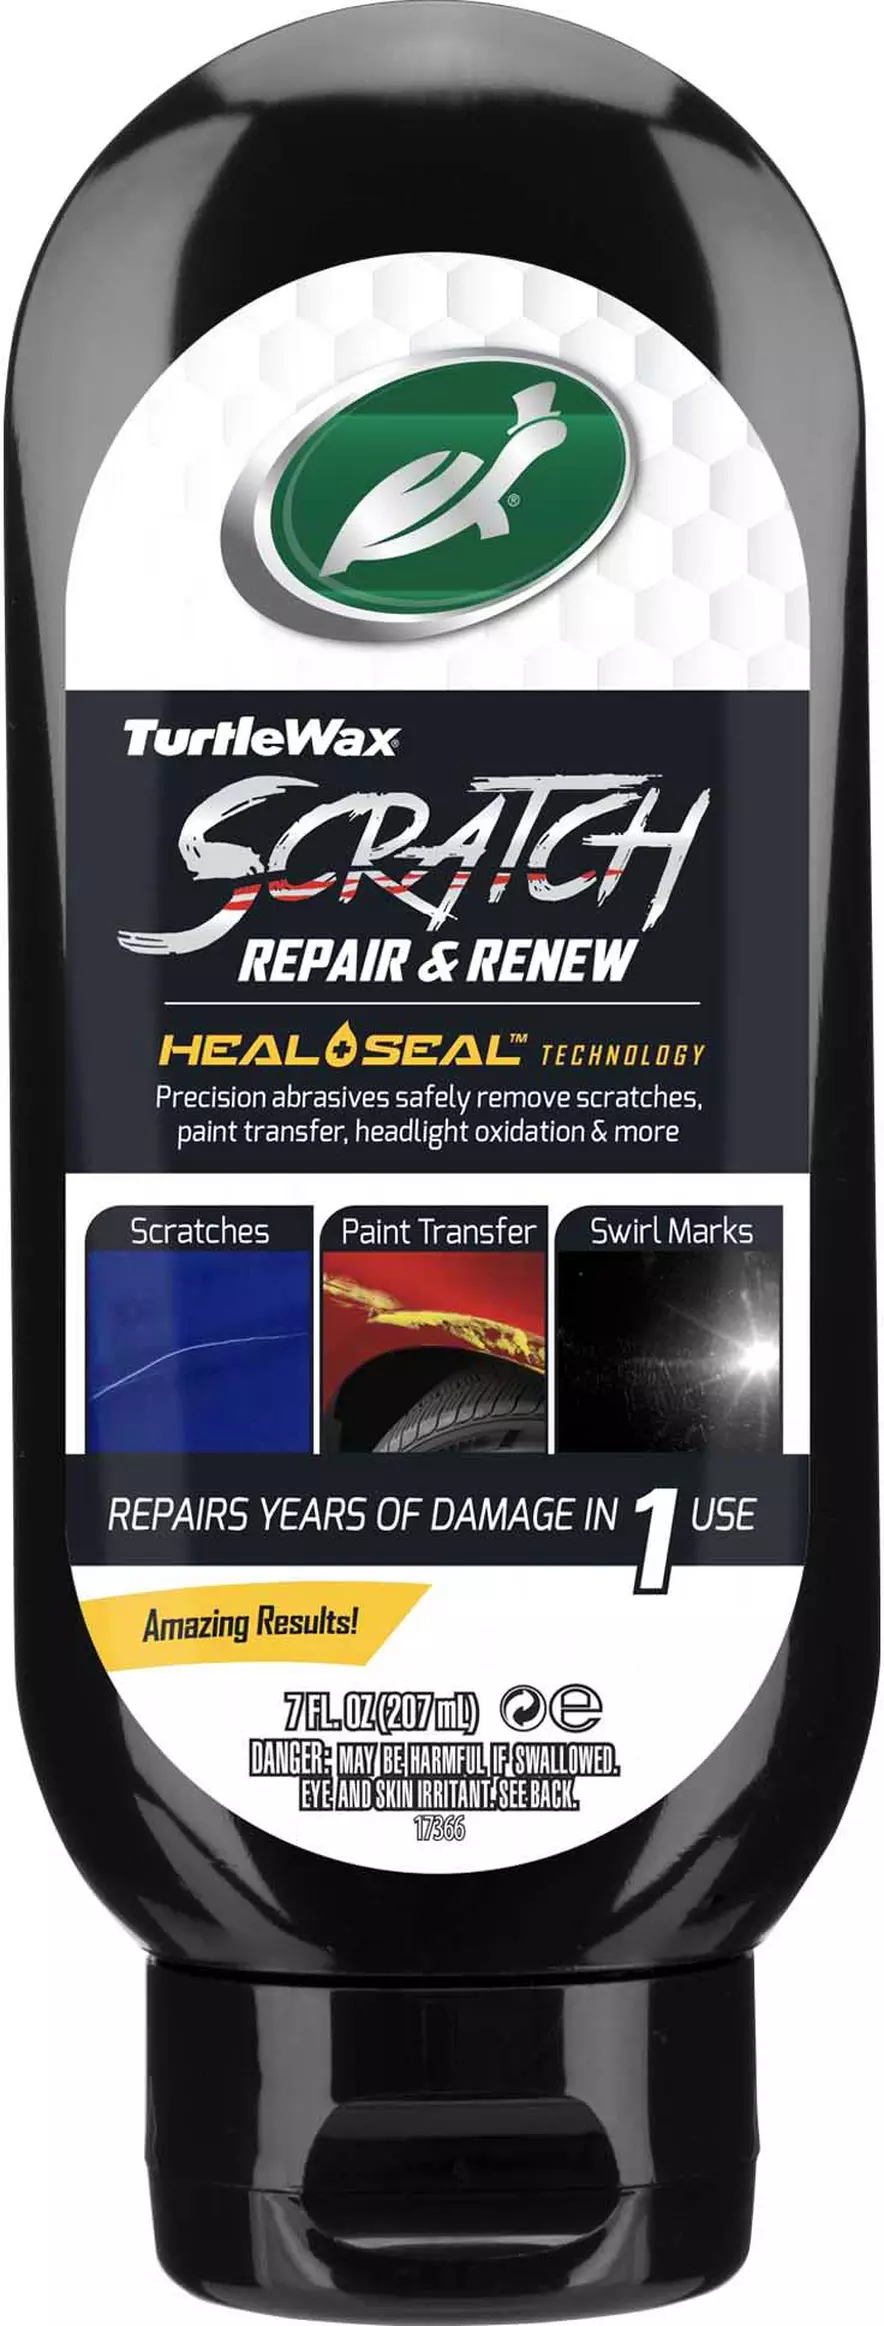 Scratch Repair & Renew